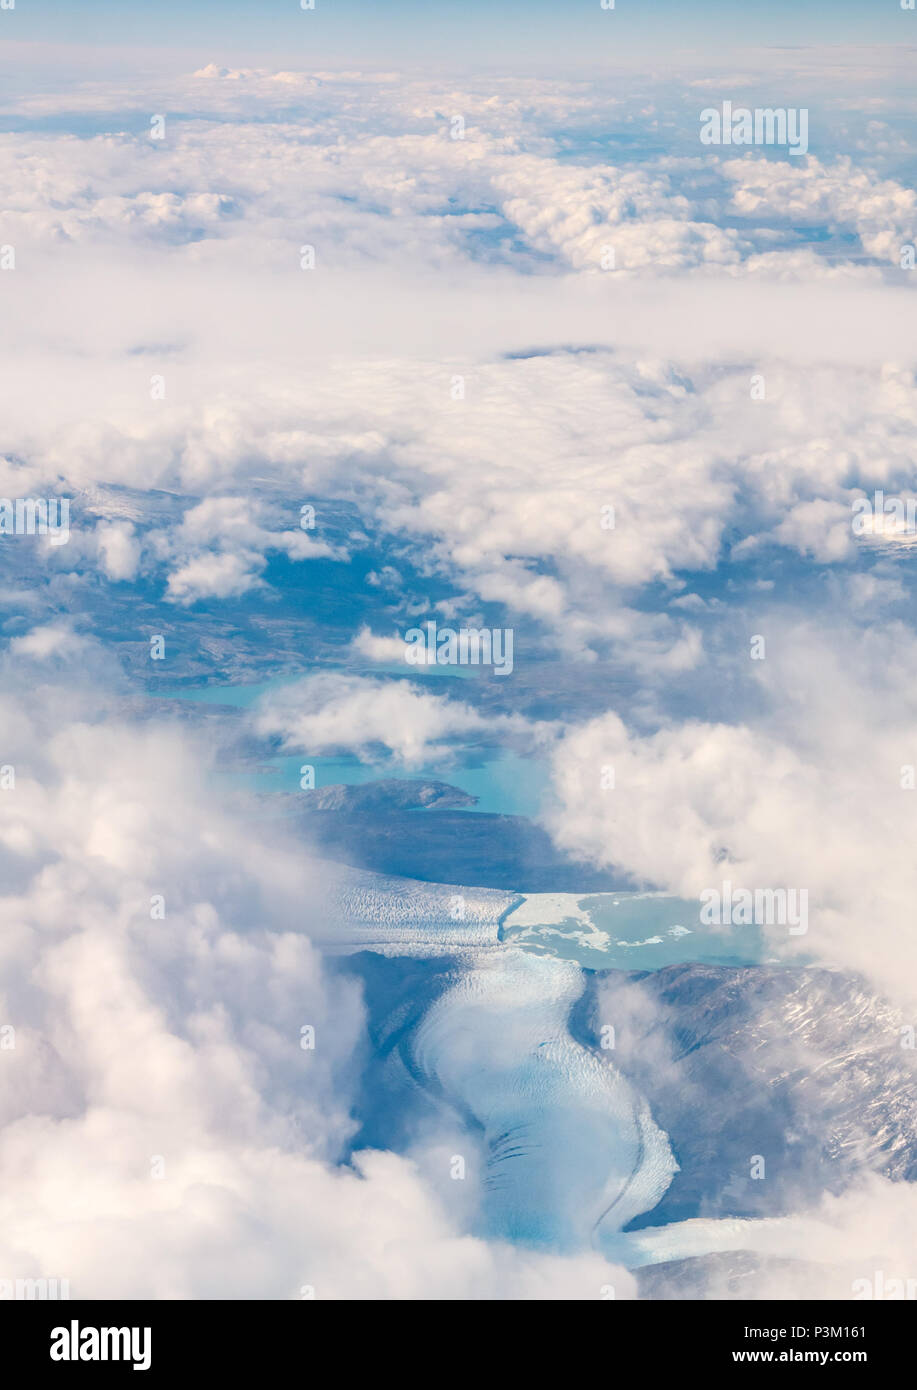 Vue depuis la fenêtre de l'avion de la neige a couvert des Andes avec les glaciers et les icebergs du lac en réunion, dans le sud de la glace de Patagonie Patagonie, au Chili, sur le terrain Banque D'Images